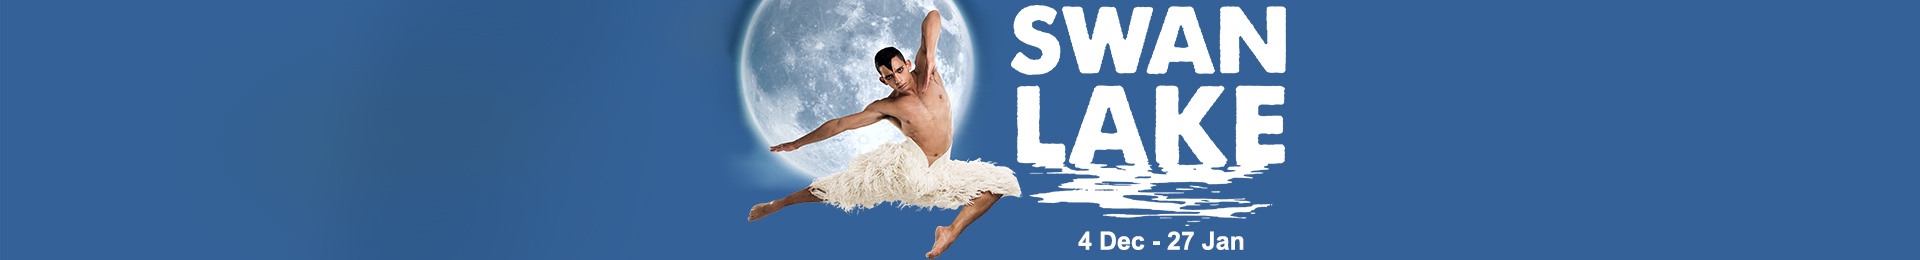 Matthew Bourne's Swan Lake banner image